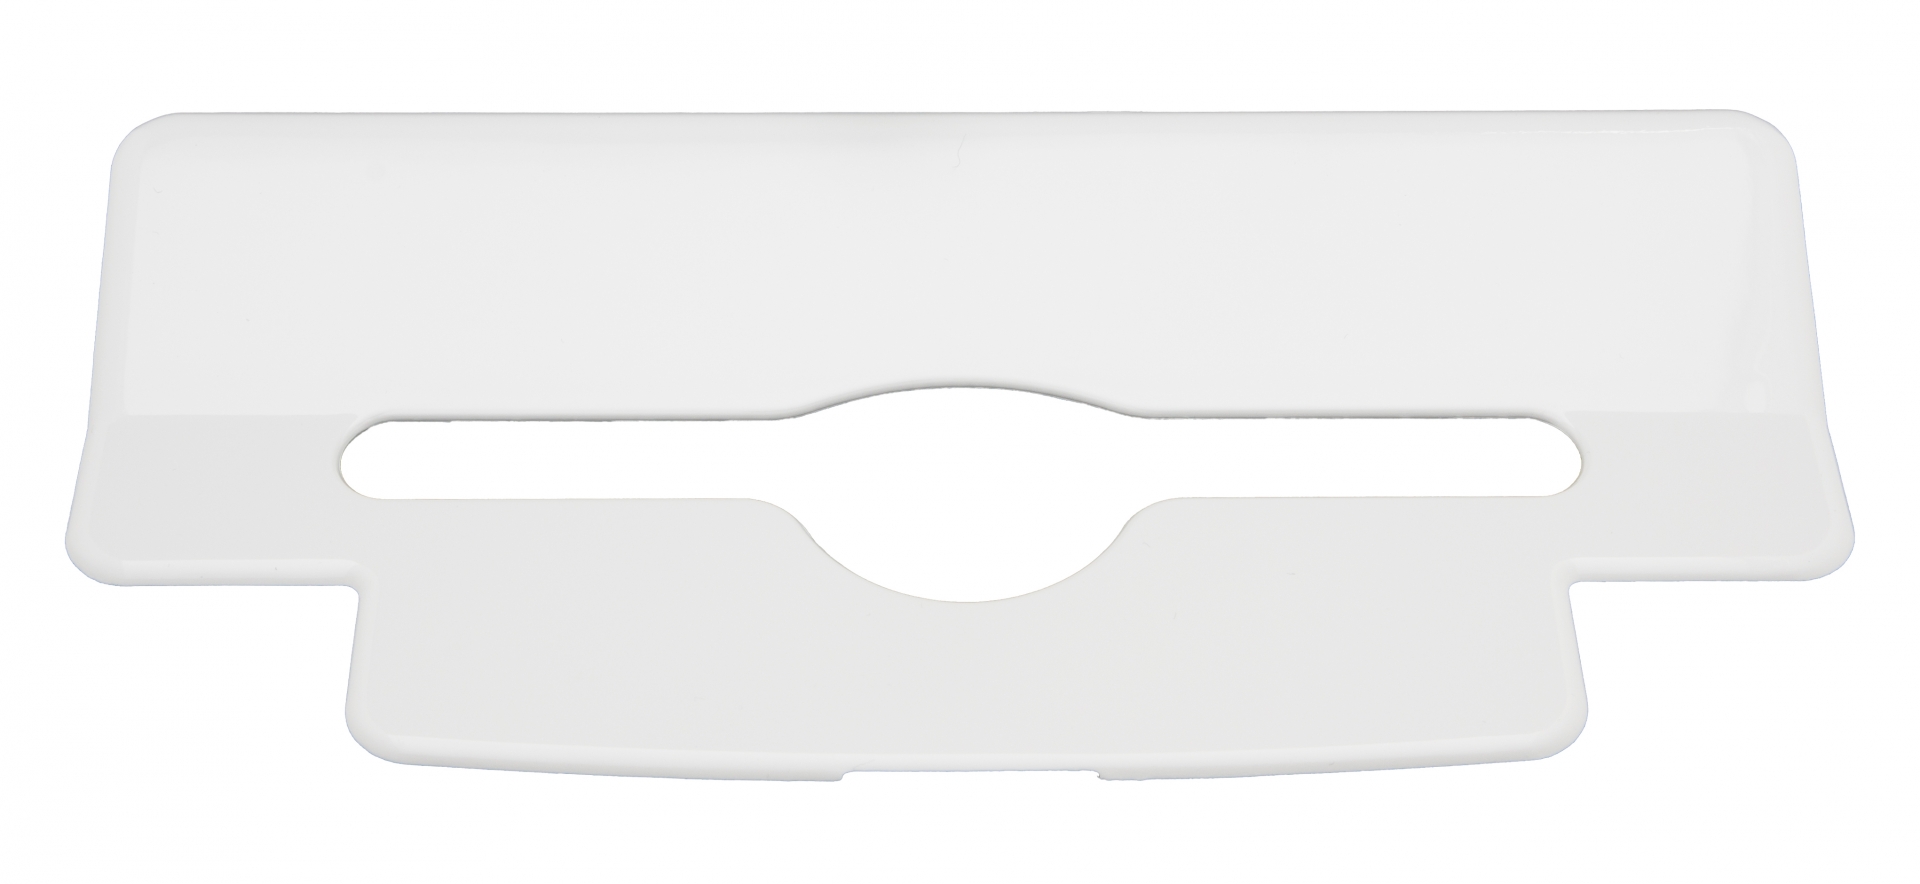 Interfold Adapter für Falthandtuchspender, weiß, 26 x 12 cm 